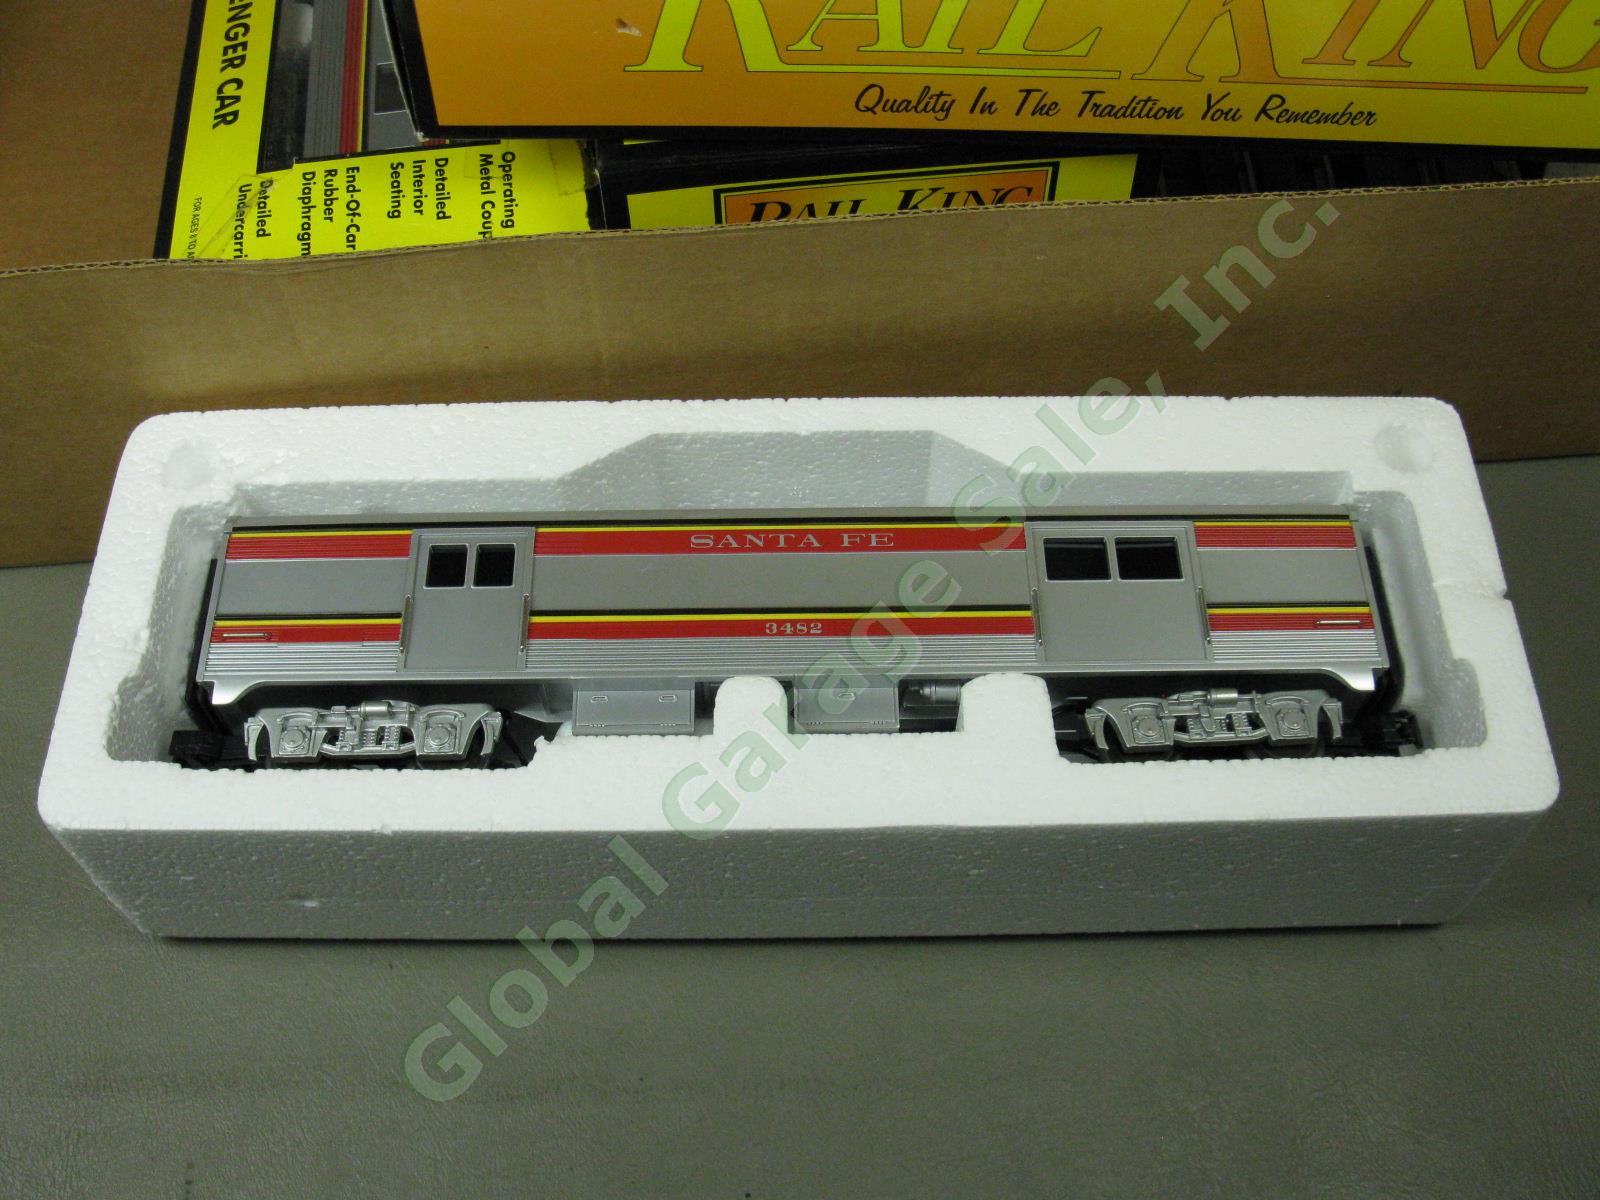 MTH Rail King Santa Fe Super Chief F-3 RTR Passenger Train Set W/ Box 30-4021-1 7